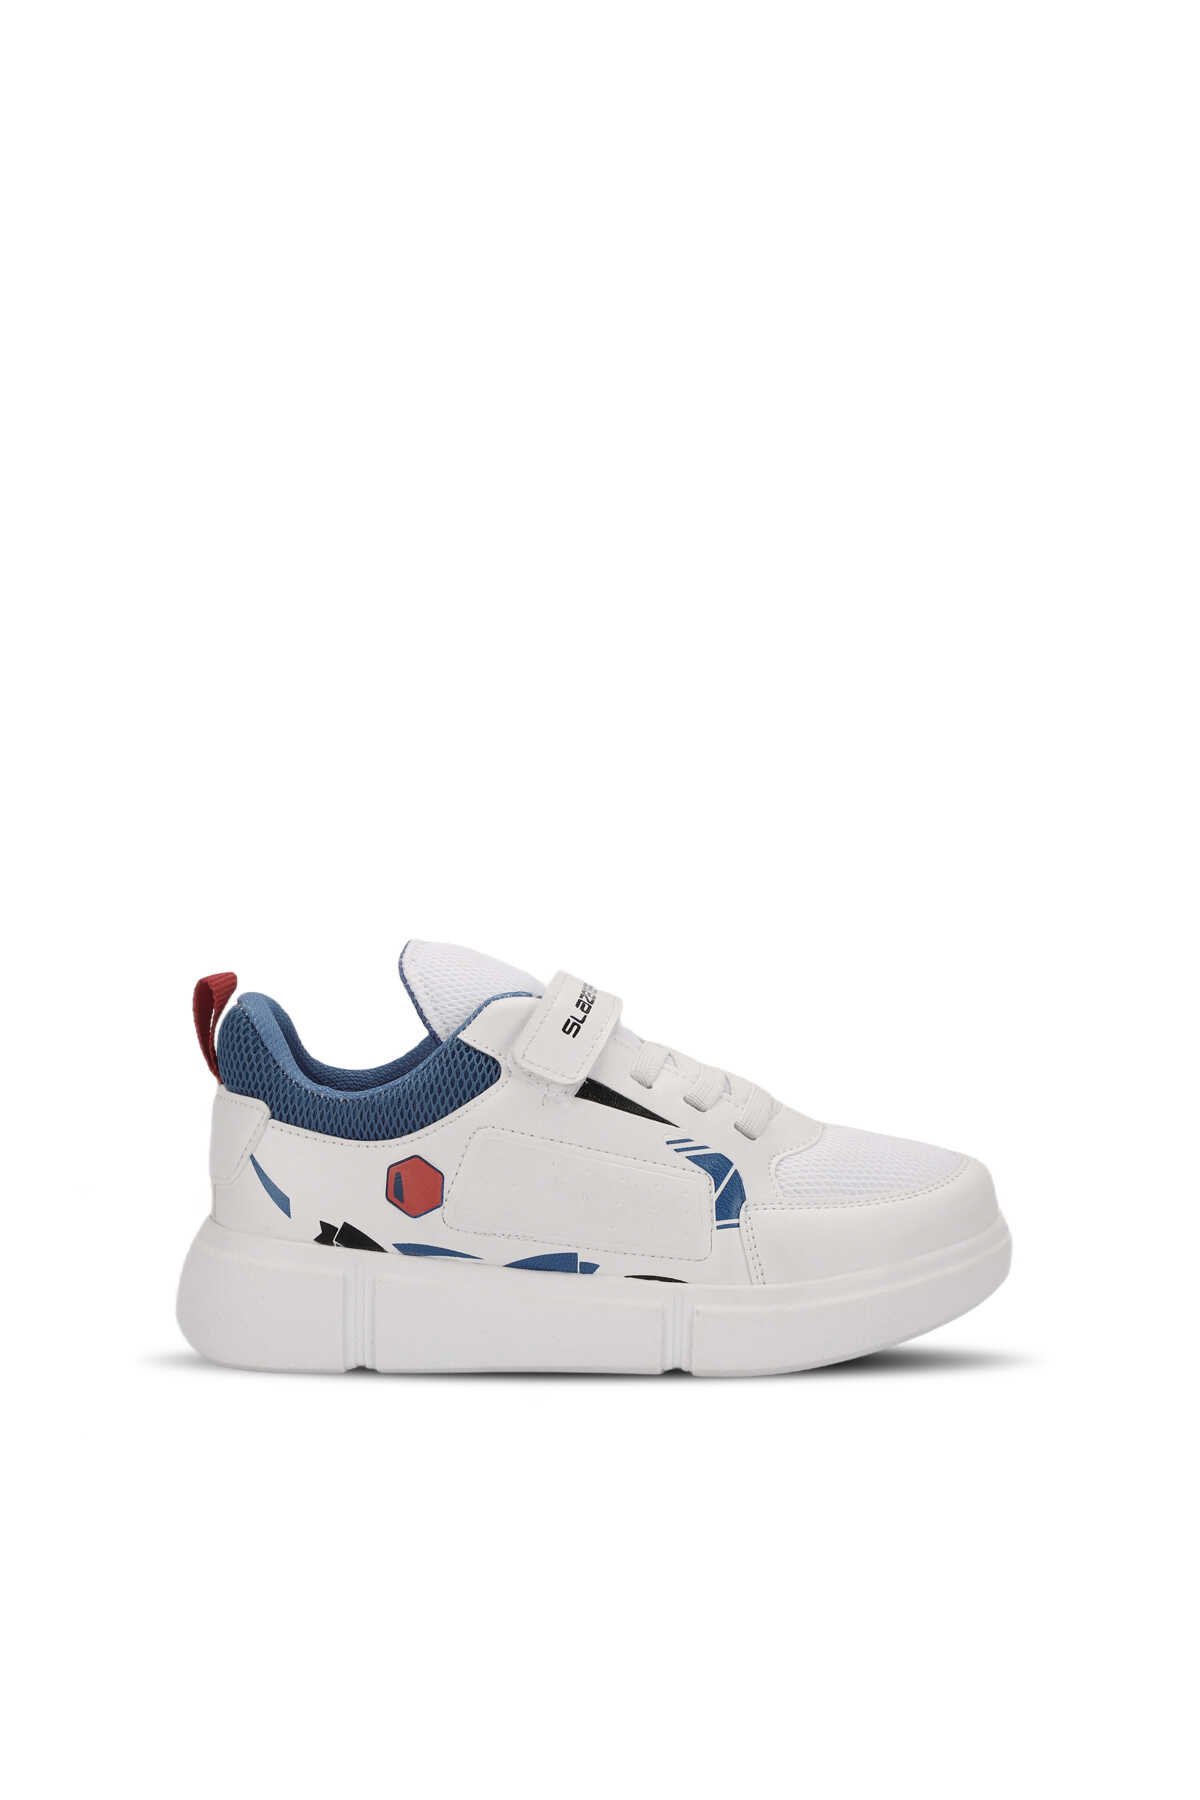 Slazenger - Slazenger KEPA Sneaker Unisex Çocuk Ayakkabı Beyaz / Saks Mavi